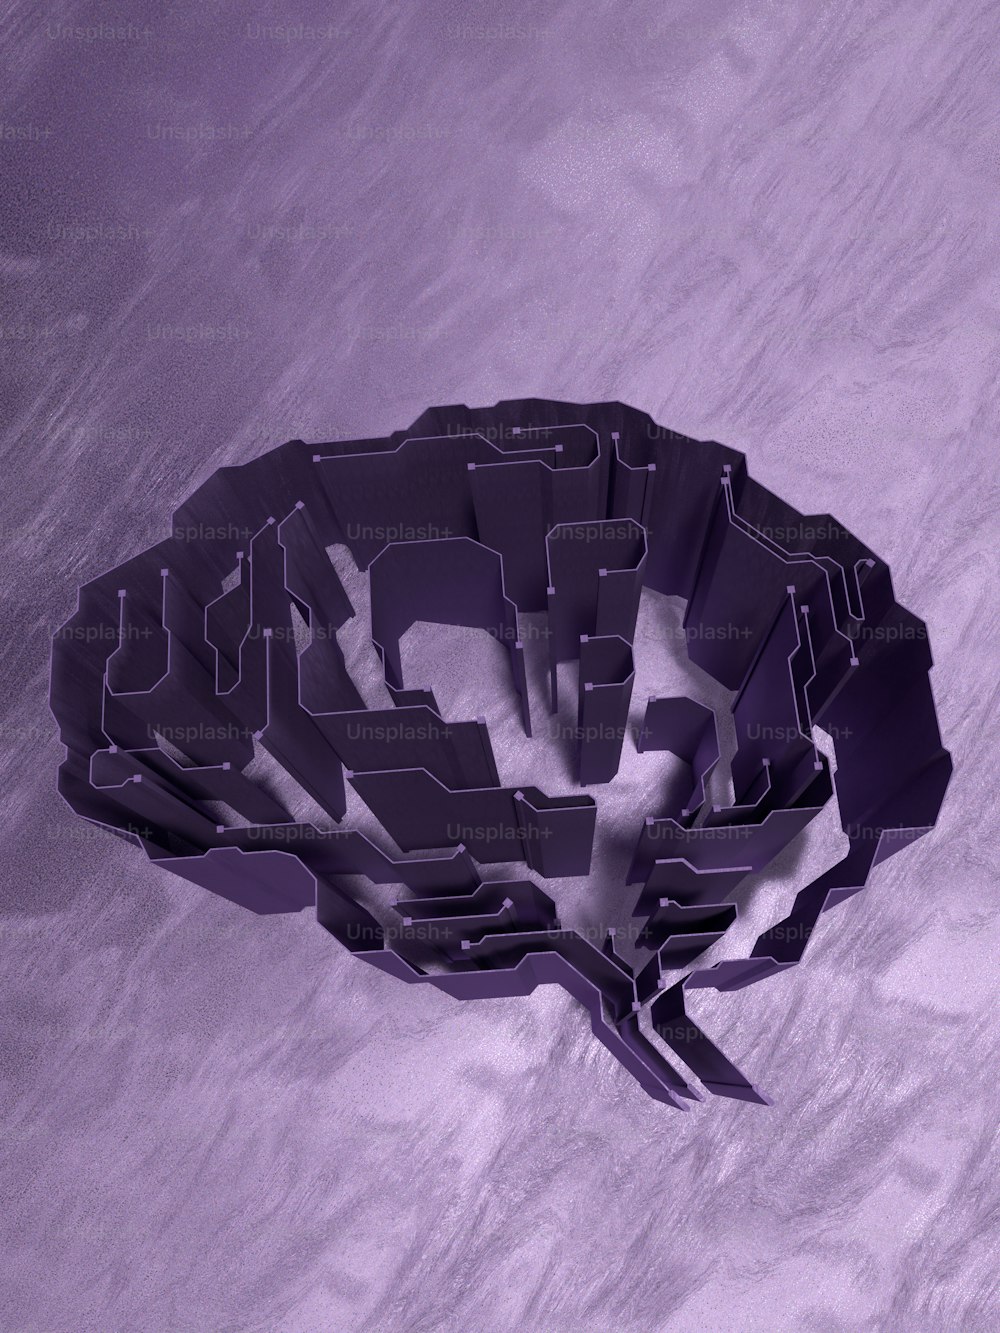 une image générée par ordinateur d’un cerveau sur fond violet